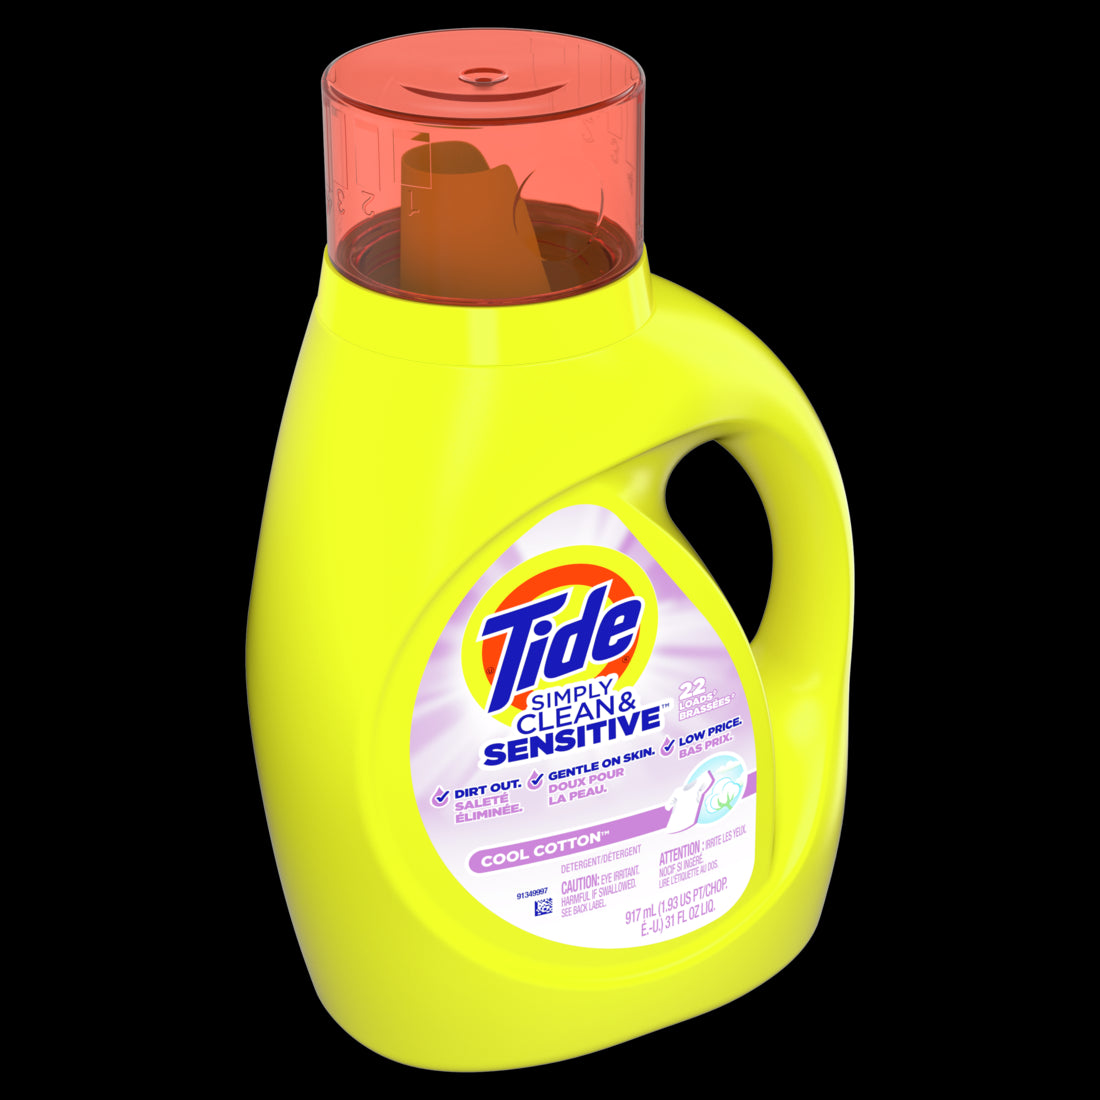 Tide Simply Clean & Sensitive Liquid Laundry Detergent Cool Cotton 22 Loads - 31oz/6pk